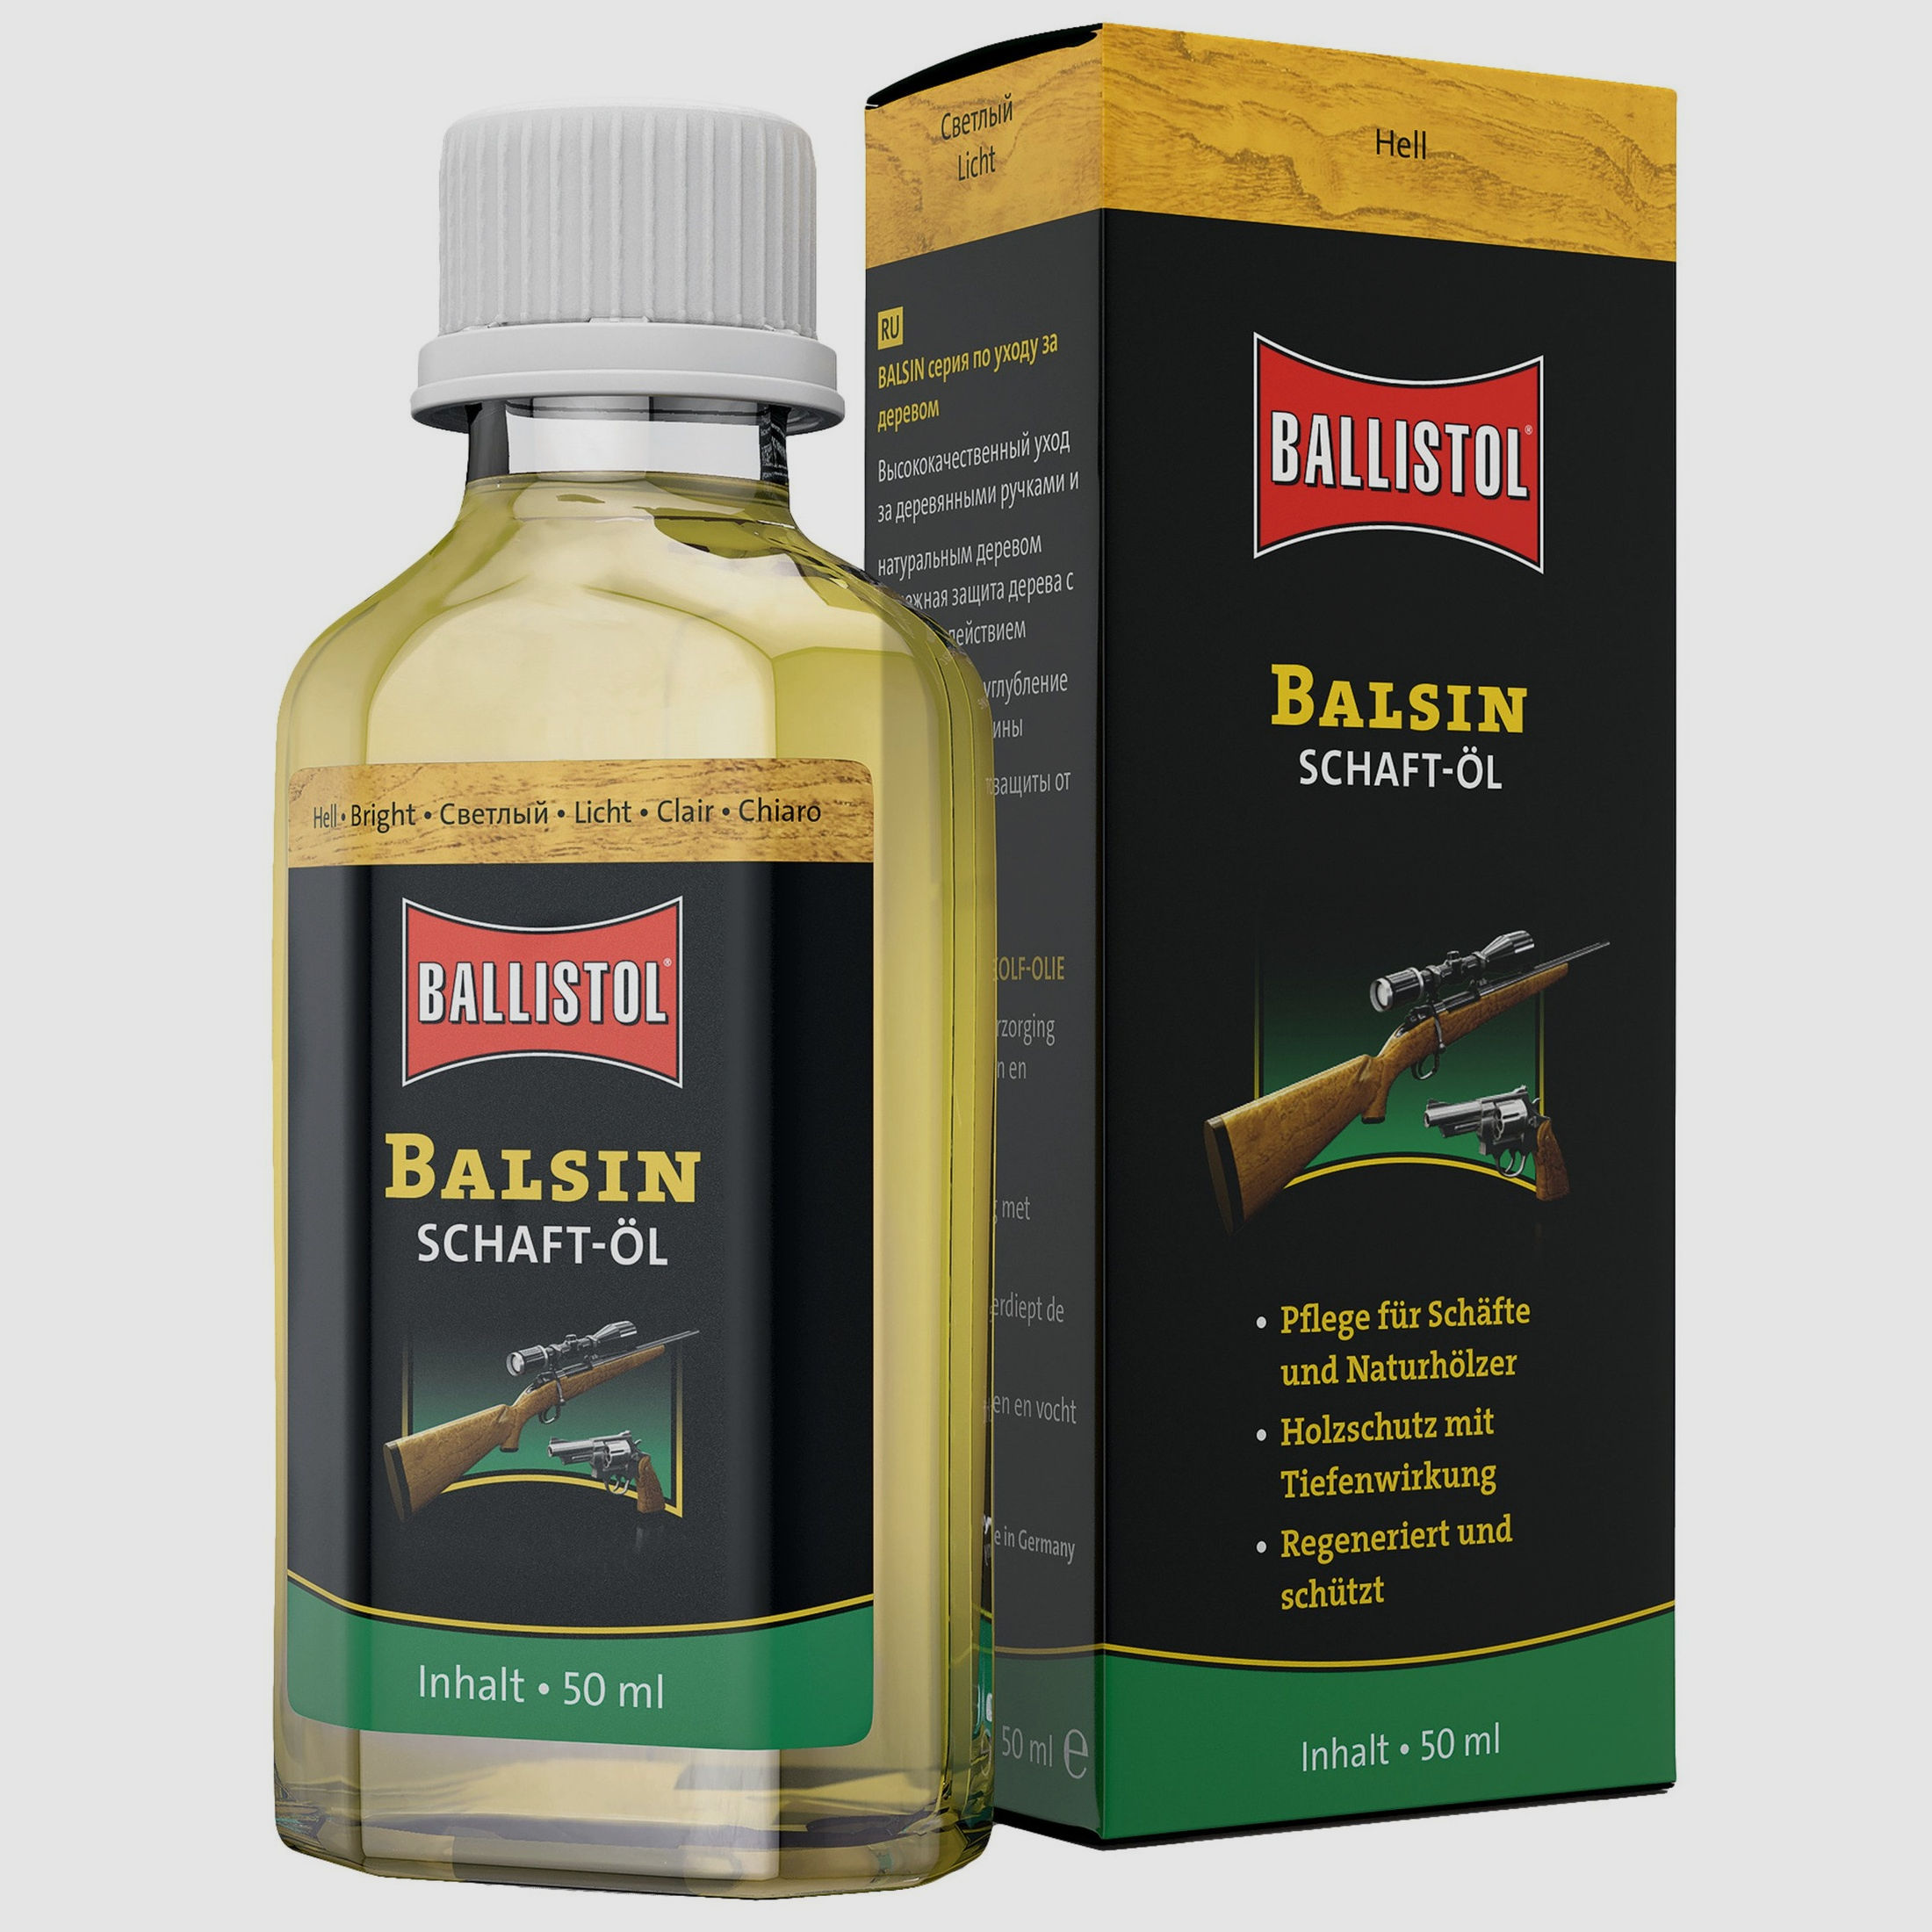 Ballistol Balsin Schaft-Öl